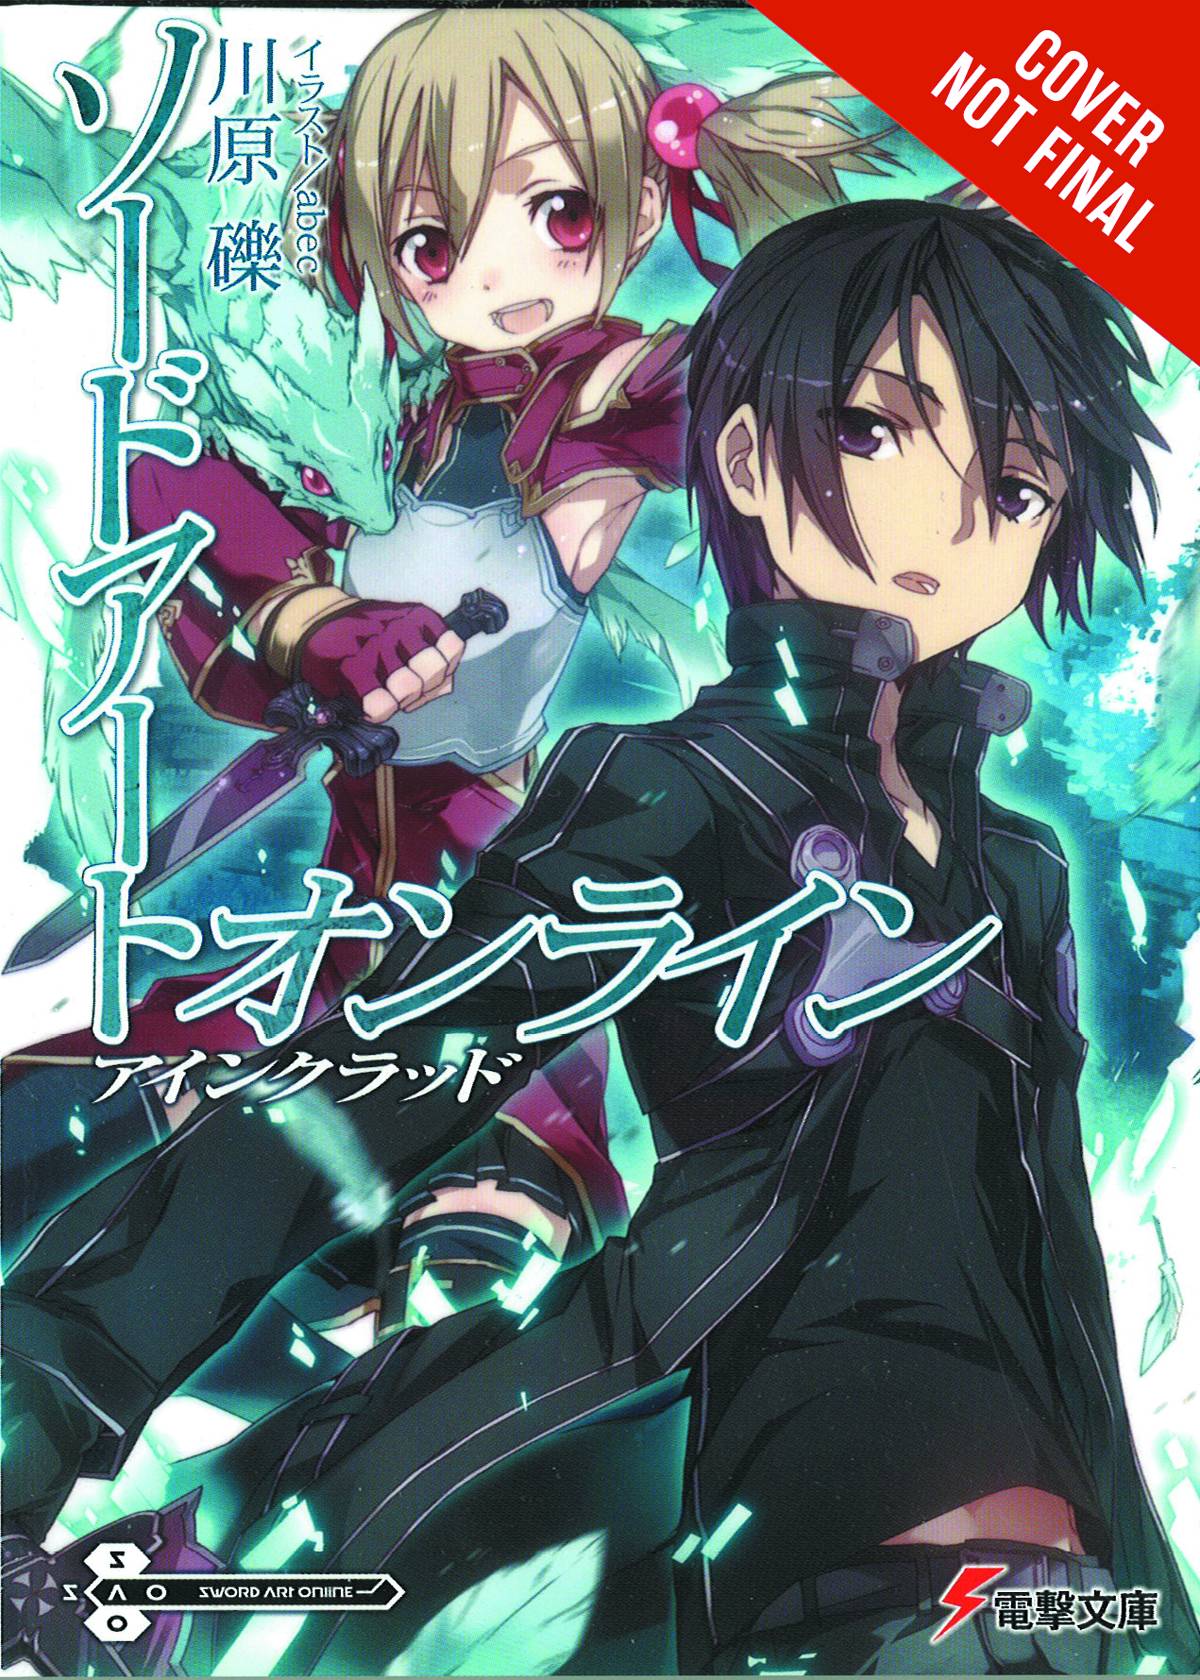 Sword Art Online Novel Volume 2 Aincrad